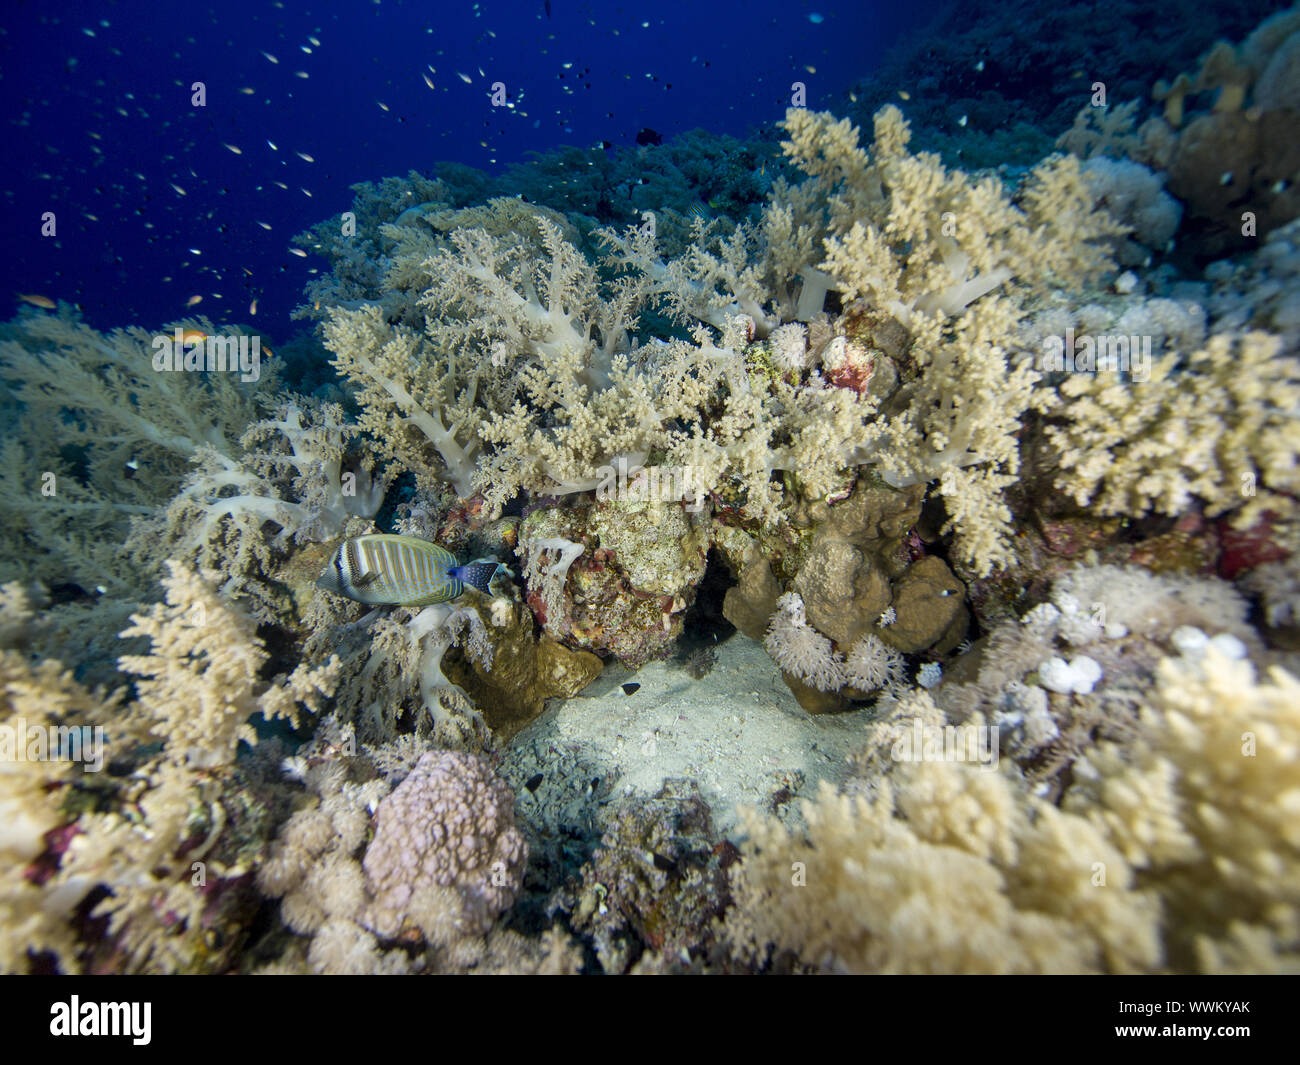 broccoli coral Stock Photo